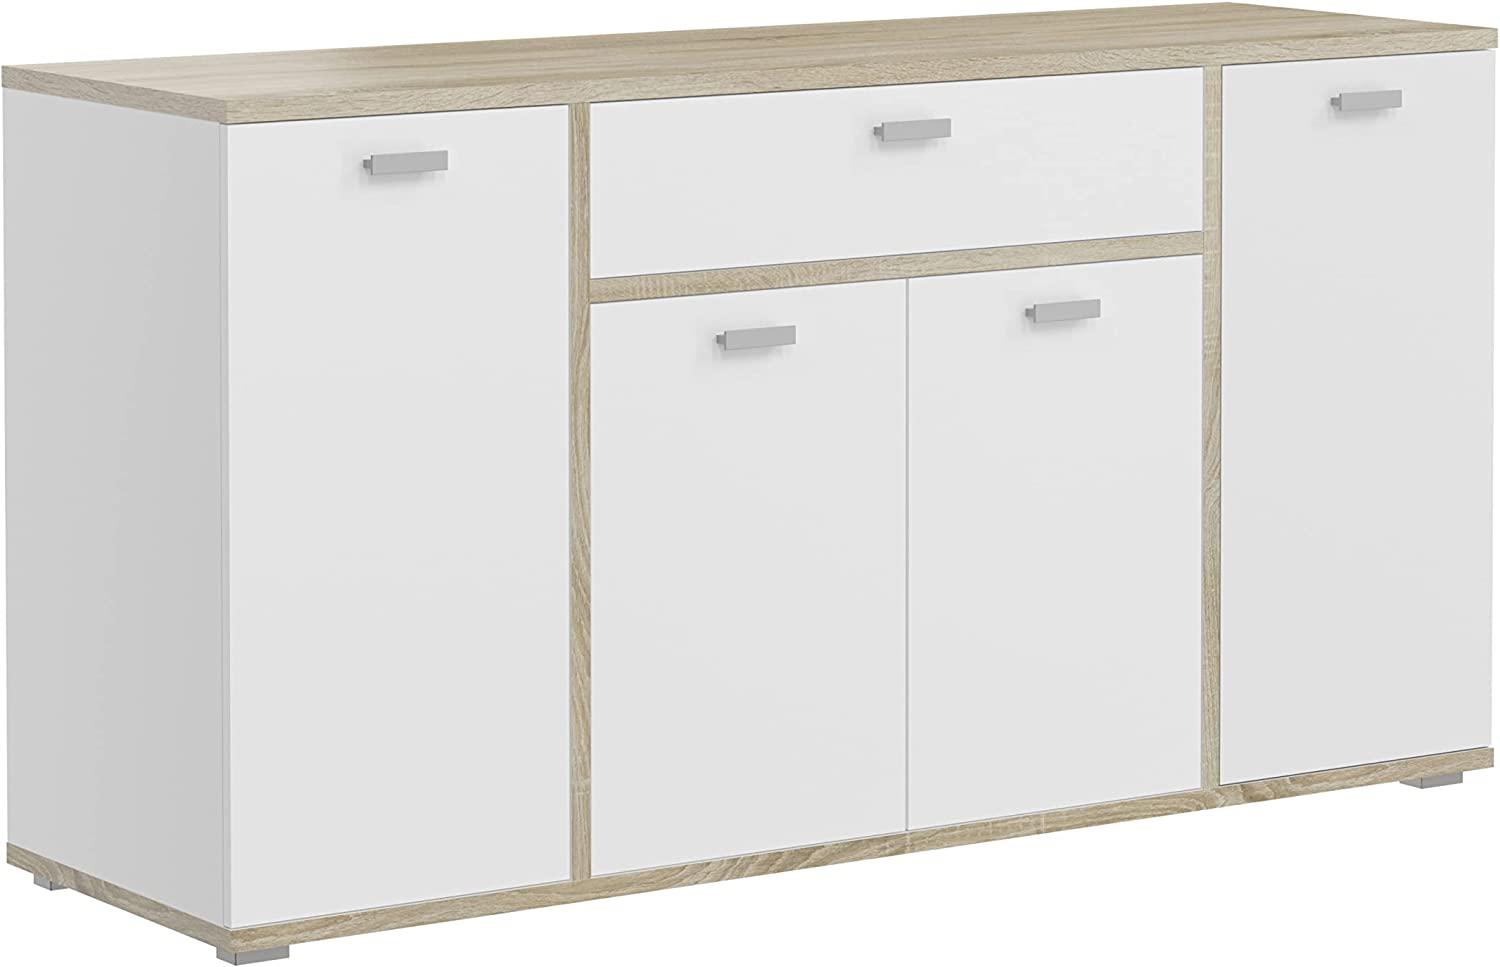 Sideboard Cosmo in weiß und Sonoma Eiche 158 x 84 cm Bild 1